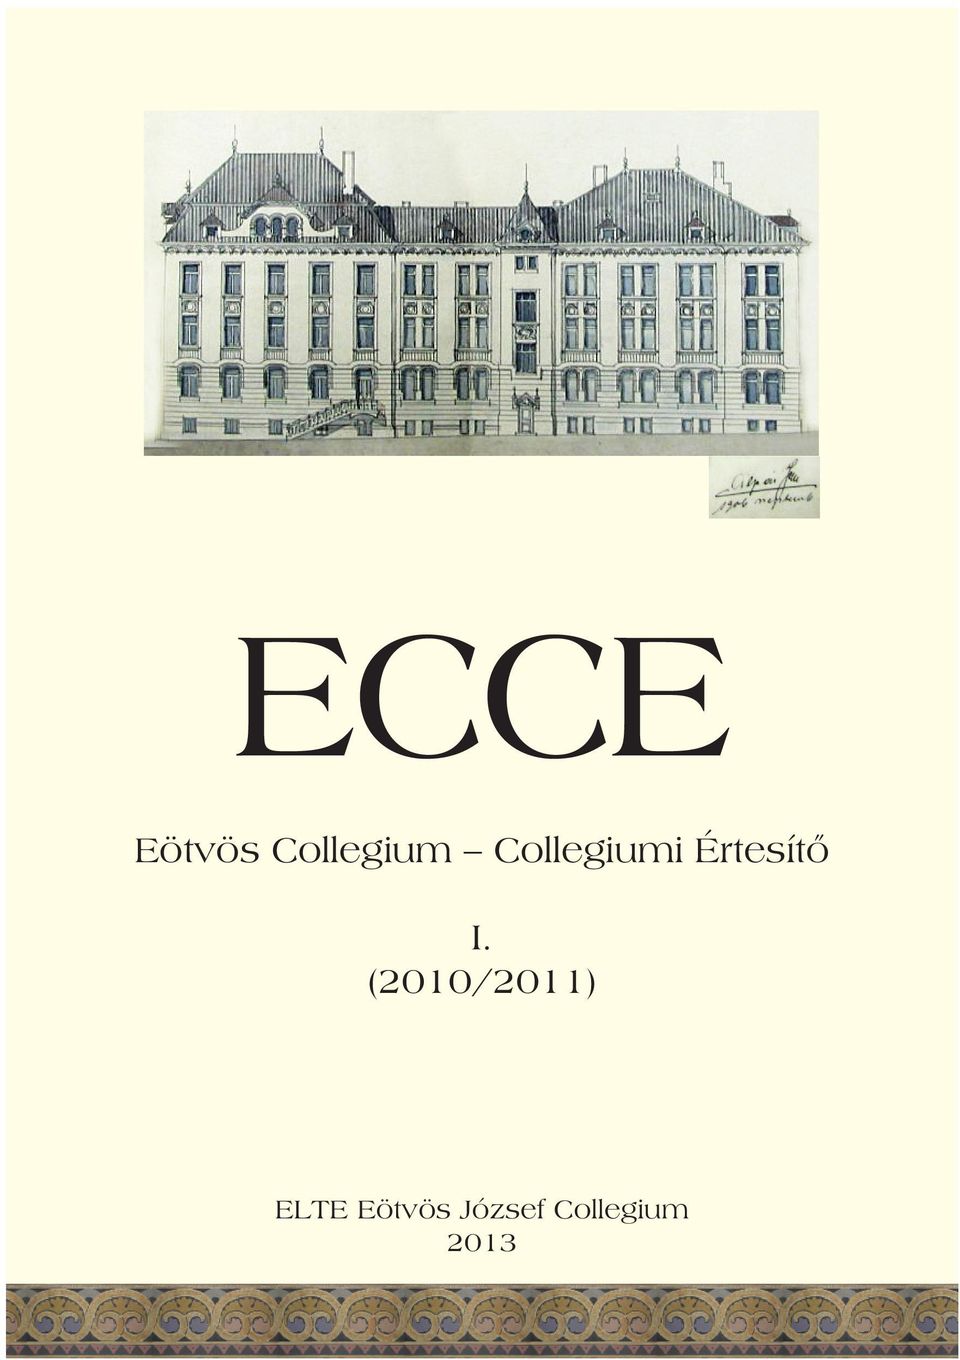 (2010/2011) ELTE